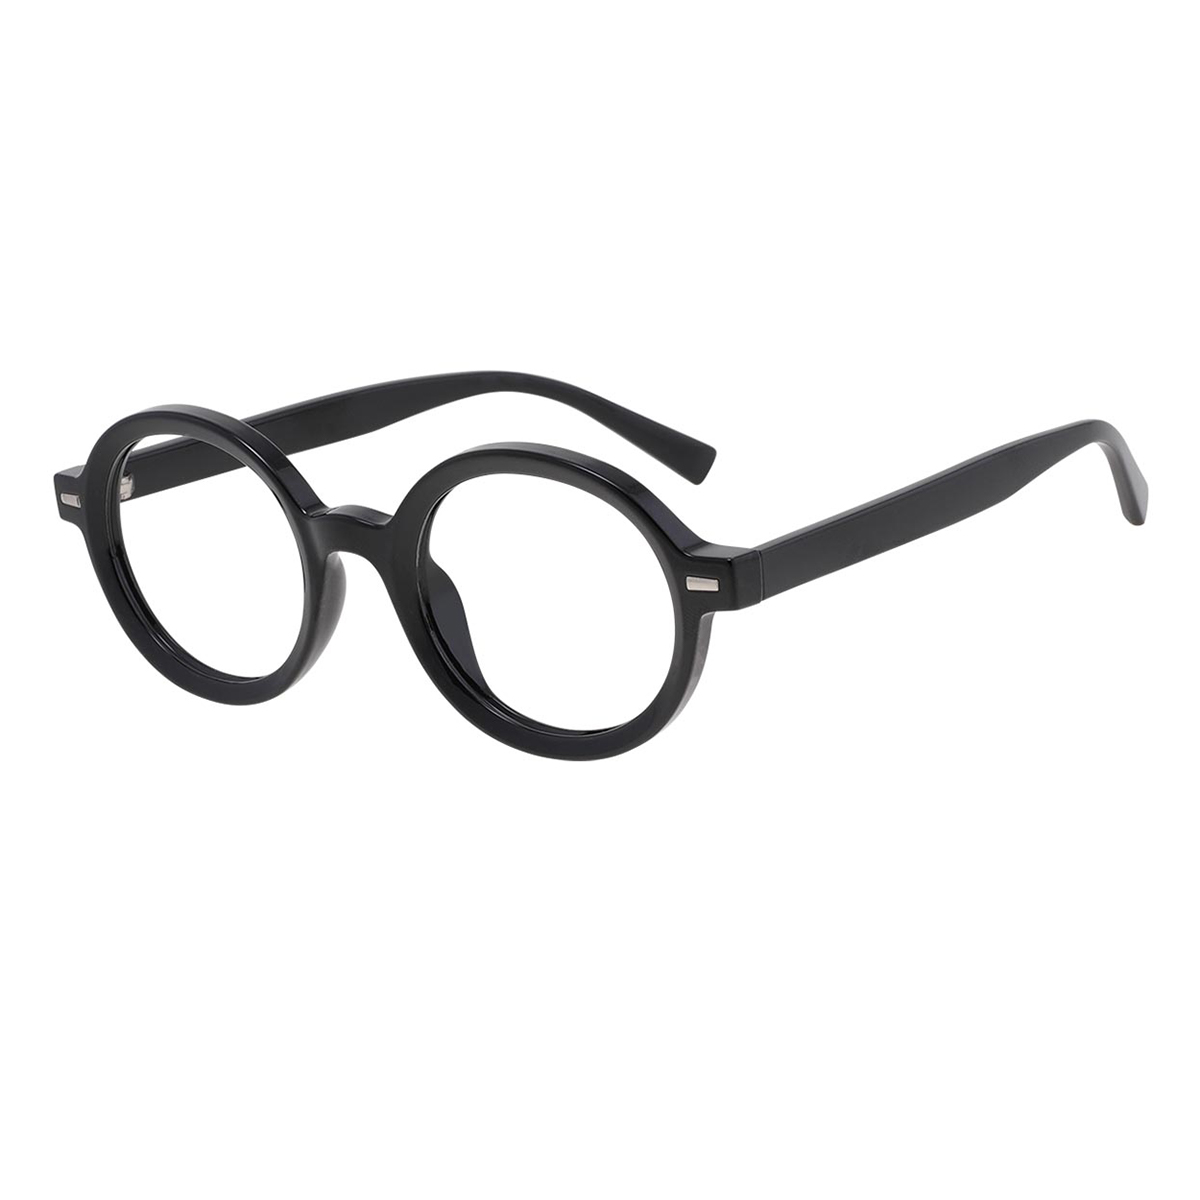 Ashplant - Round Black Reading Glasses for Men & Women